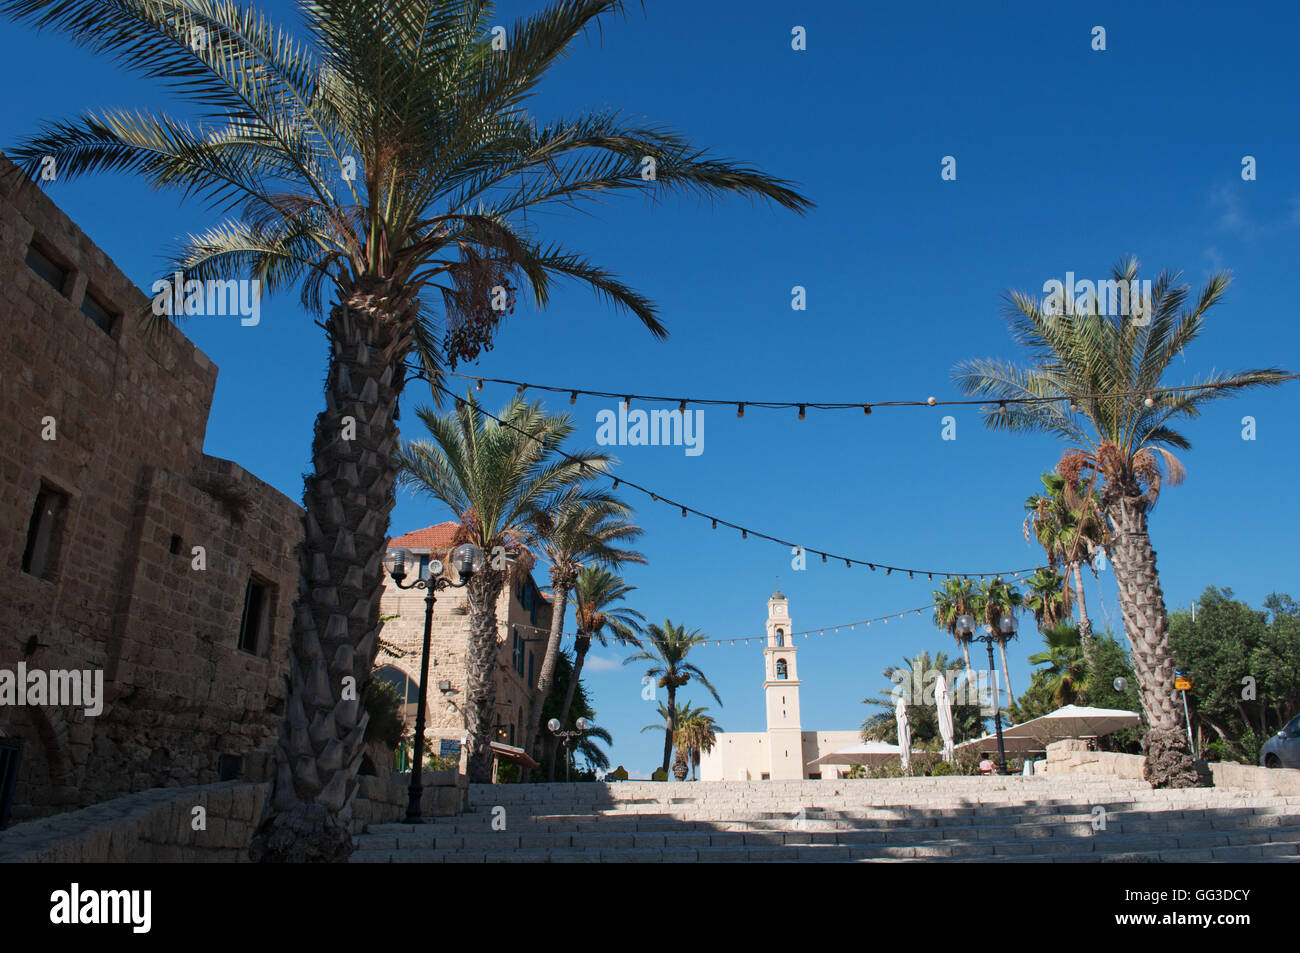 Vecchia Jaffa, Israele, Medio Oriente: palme sulla scalinata di Piazza Kedumim con la chiesa di San Pietro in background Foto Stock